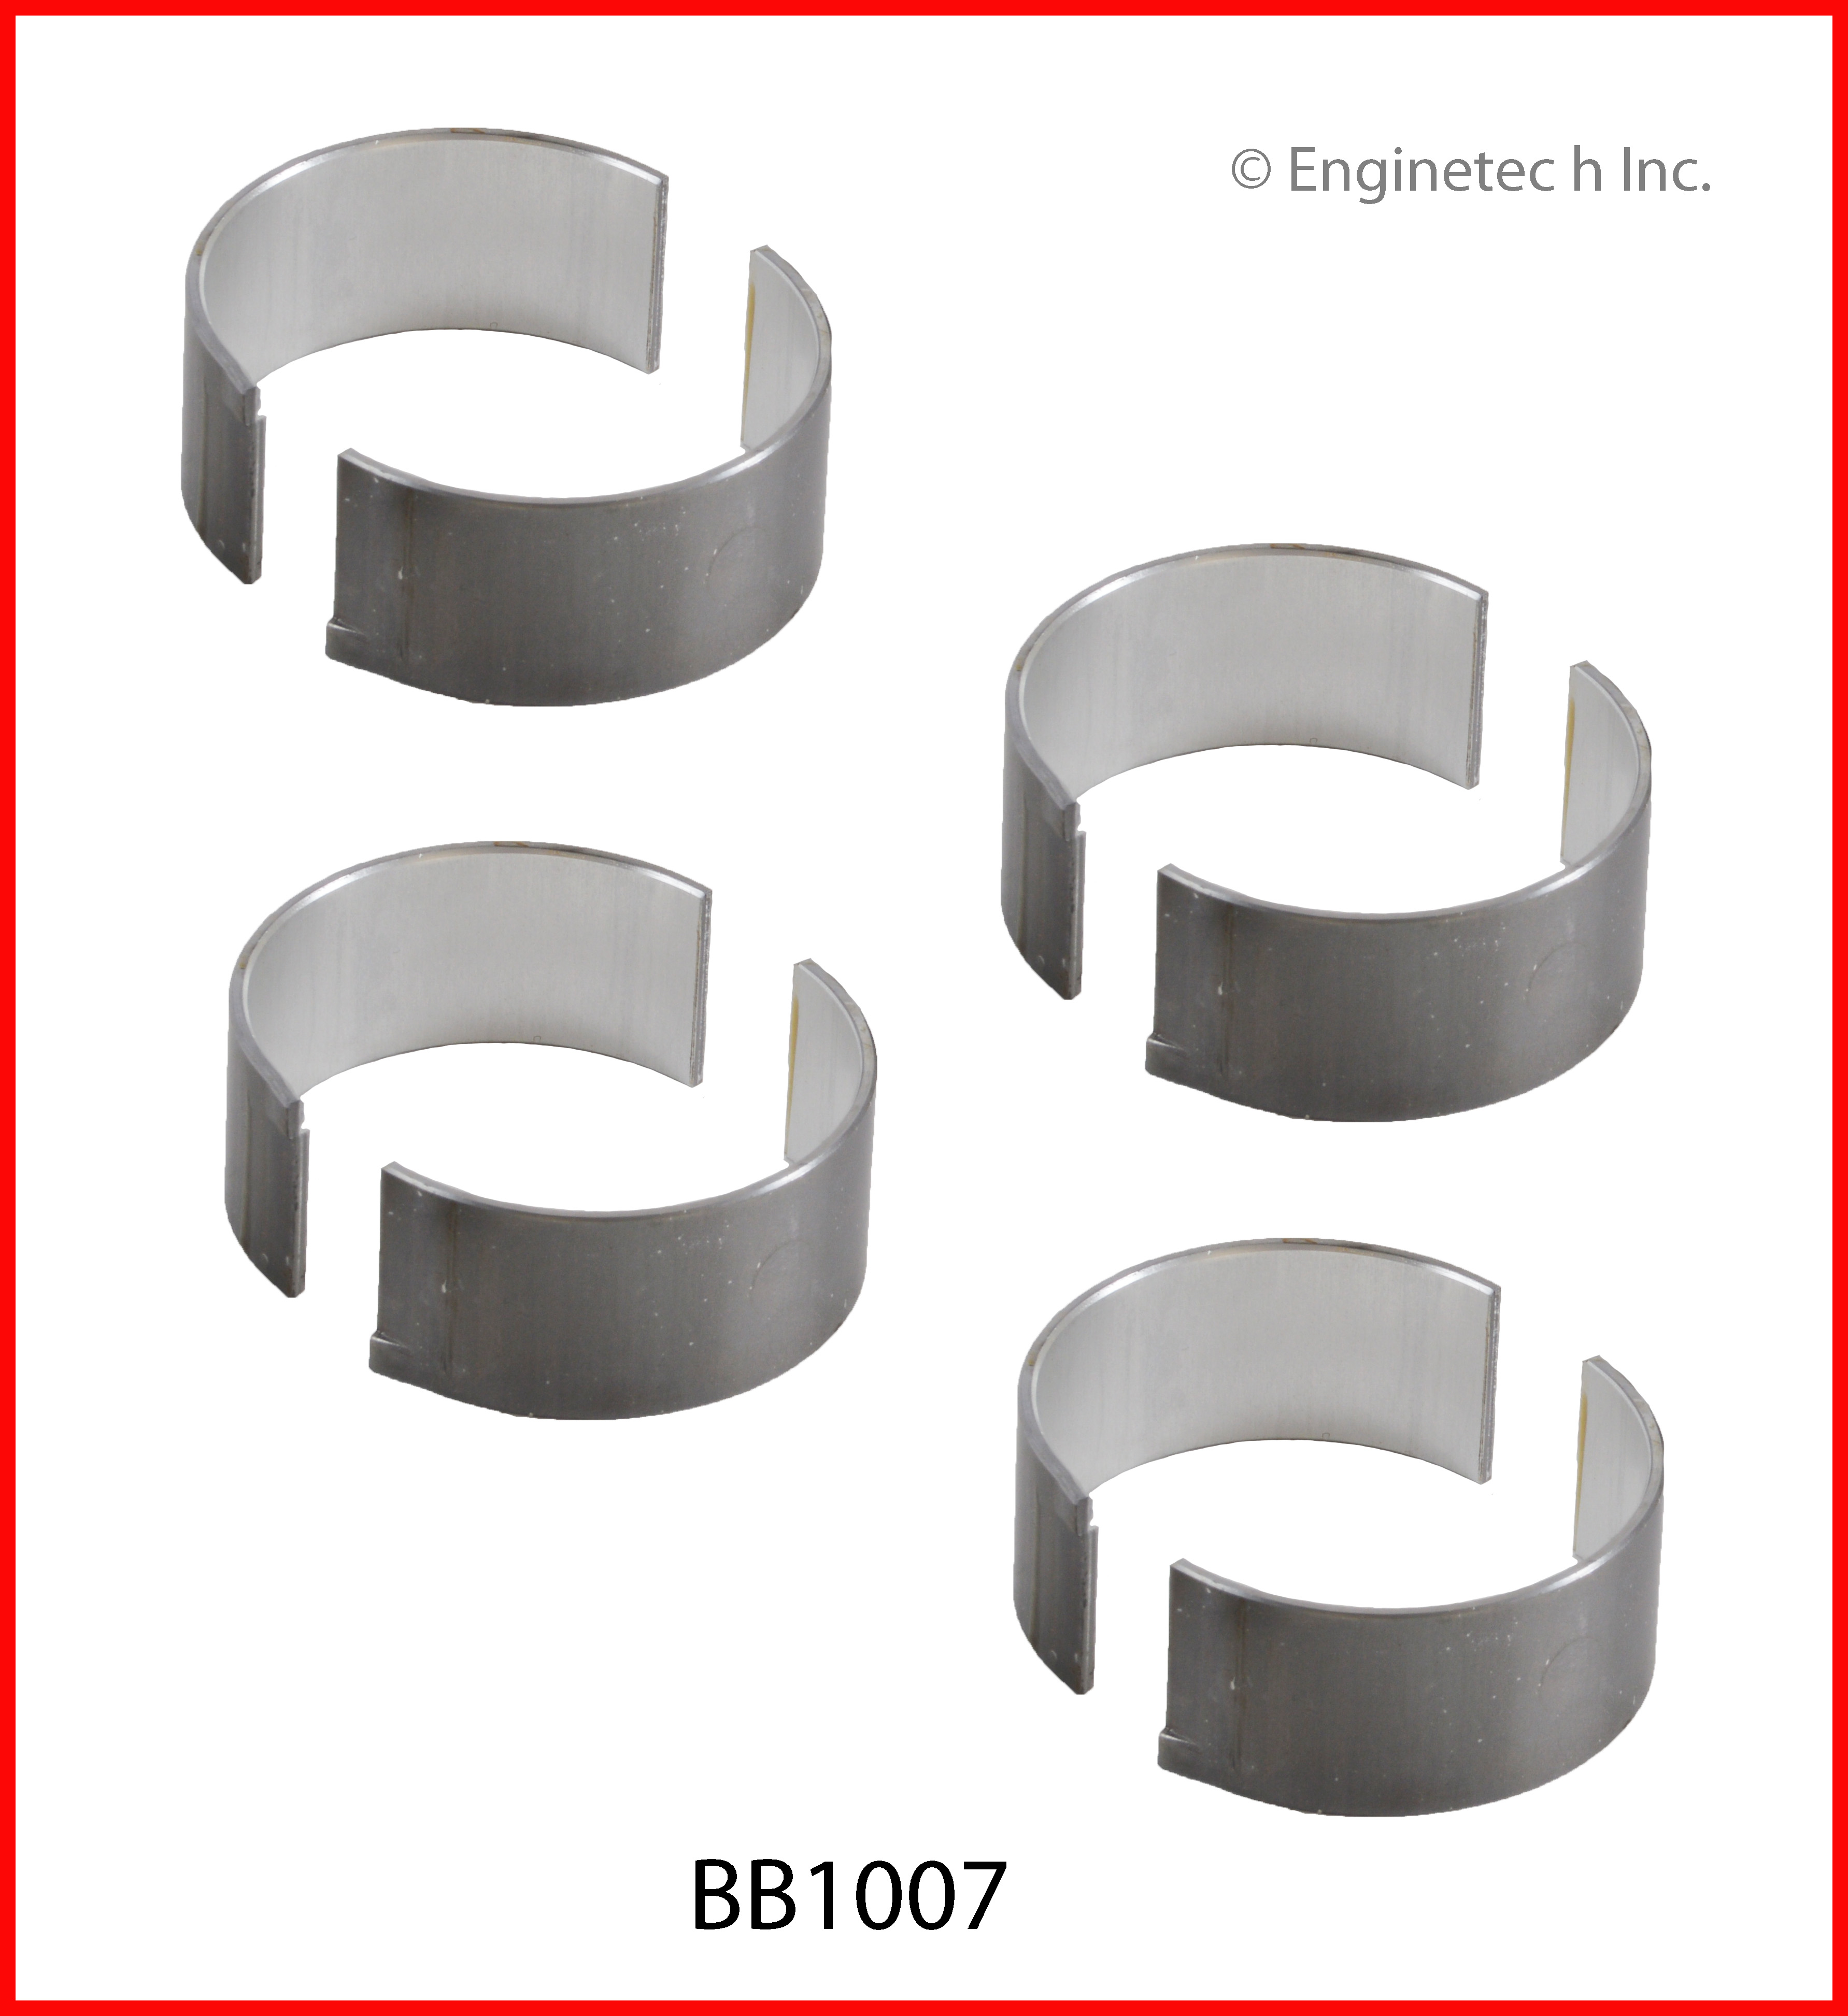 BB1007 Bearing Set - Rod Enginetech